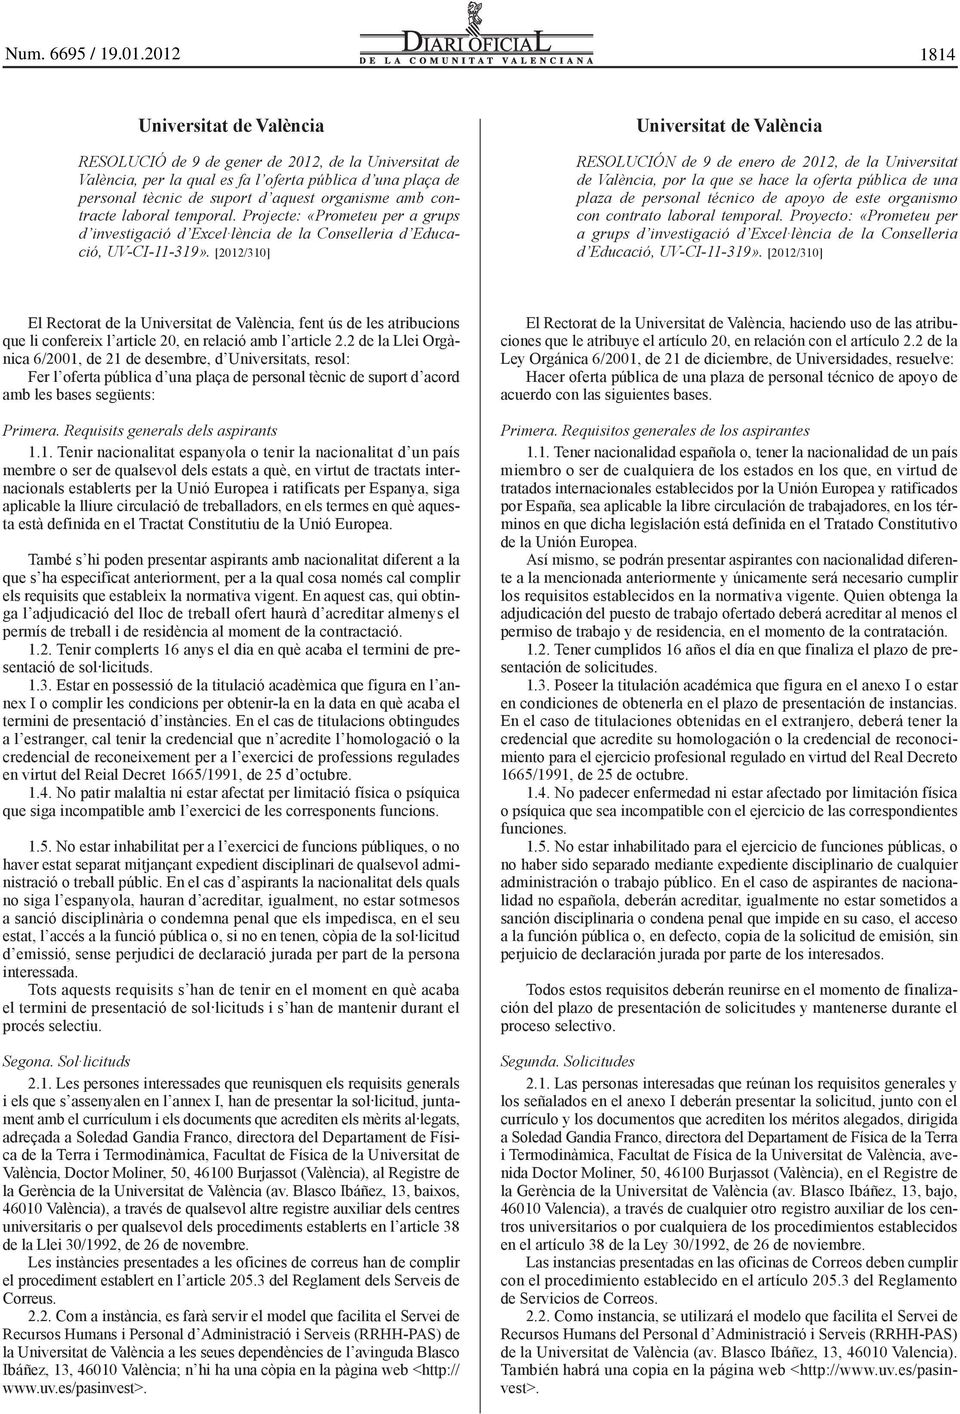 [2012/310] Universitat de València RESOLUCIÓN de 9 de enero de 2012, de la Universitat de València, por la que se hace la oferta pública de una plaza de personal técnico de apoyo de este organismo